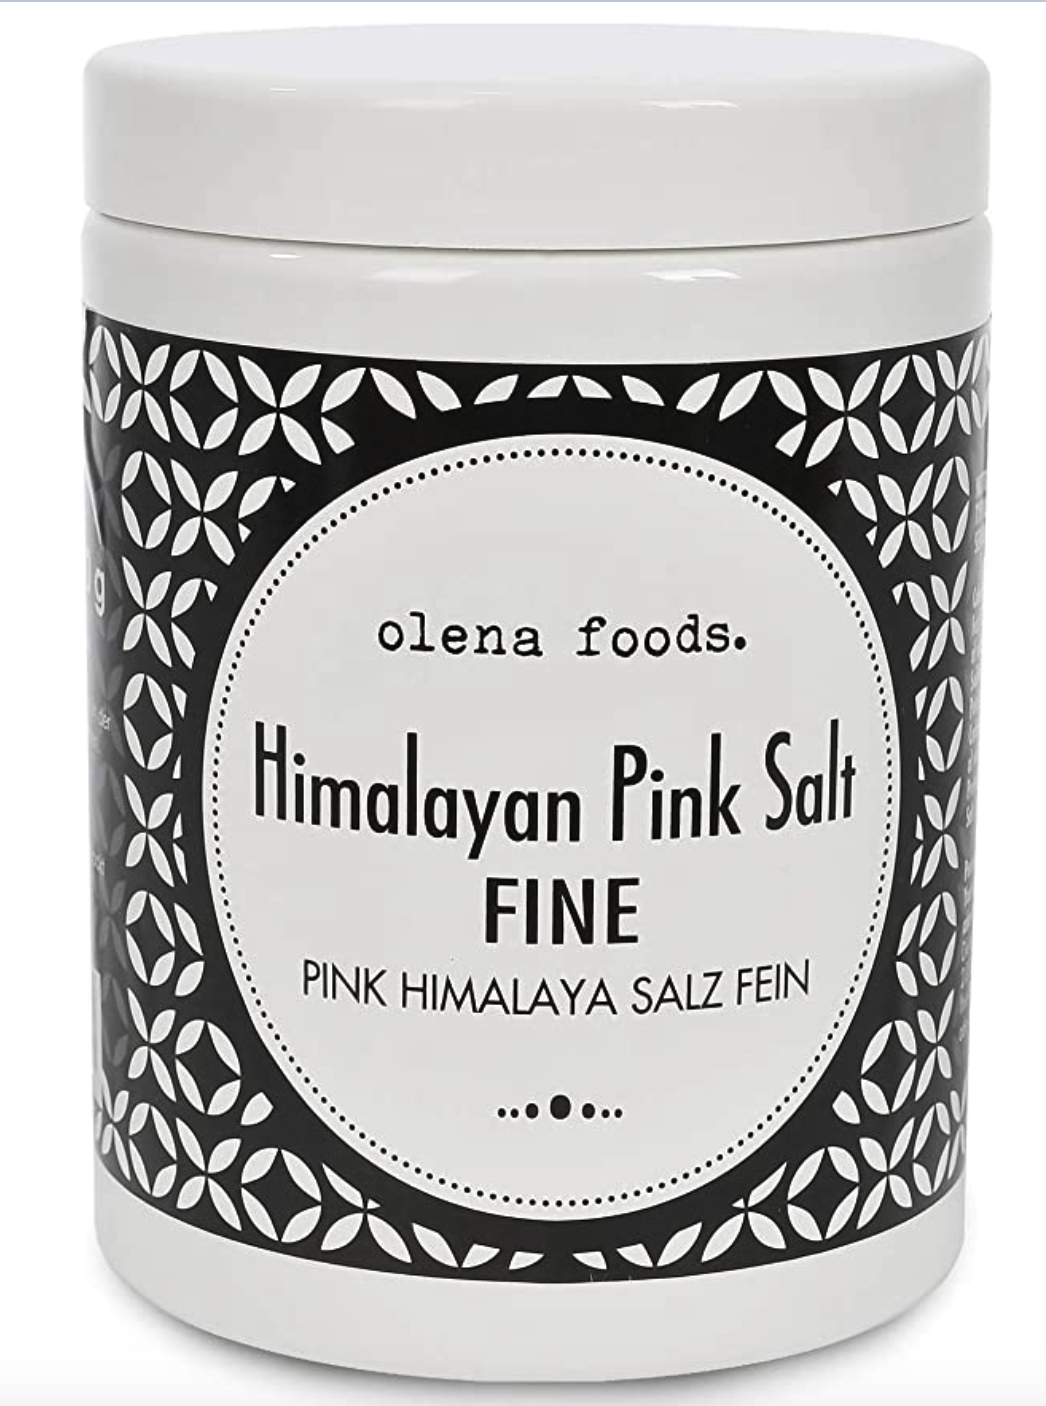 Himalayan pink salts